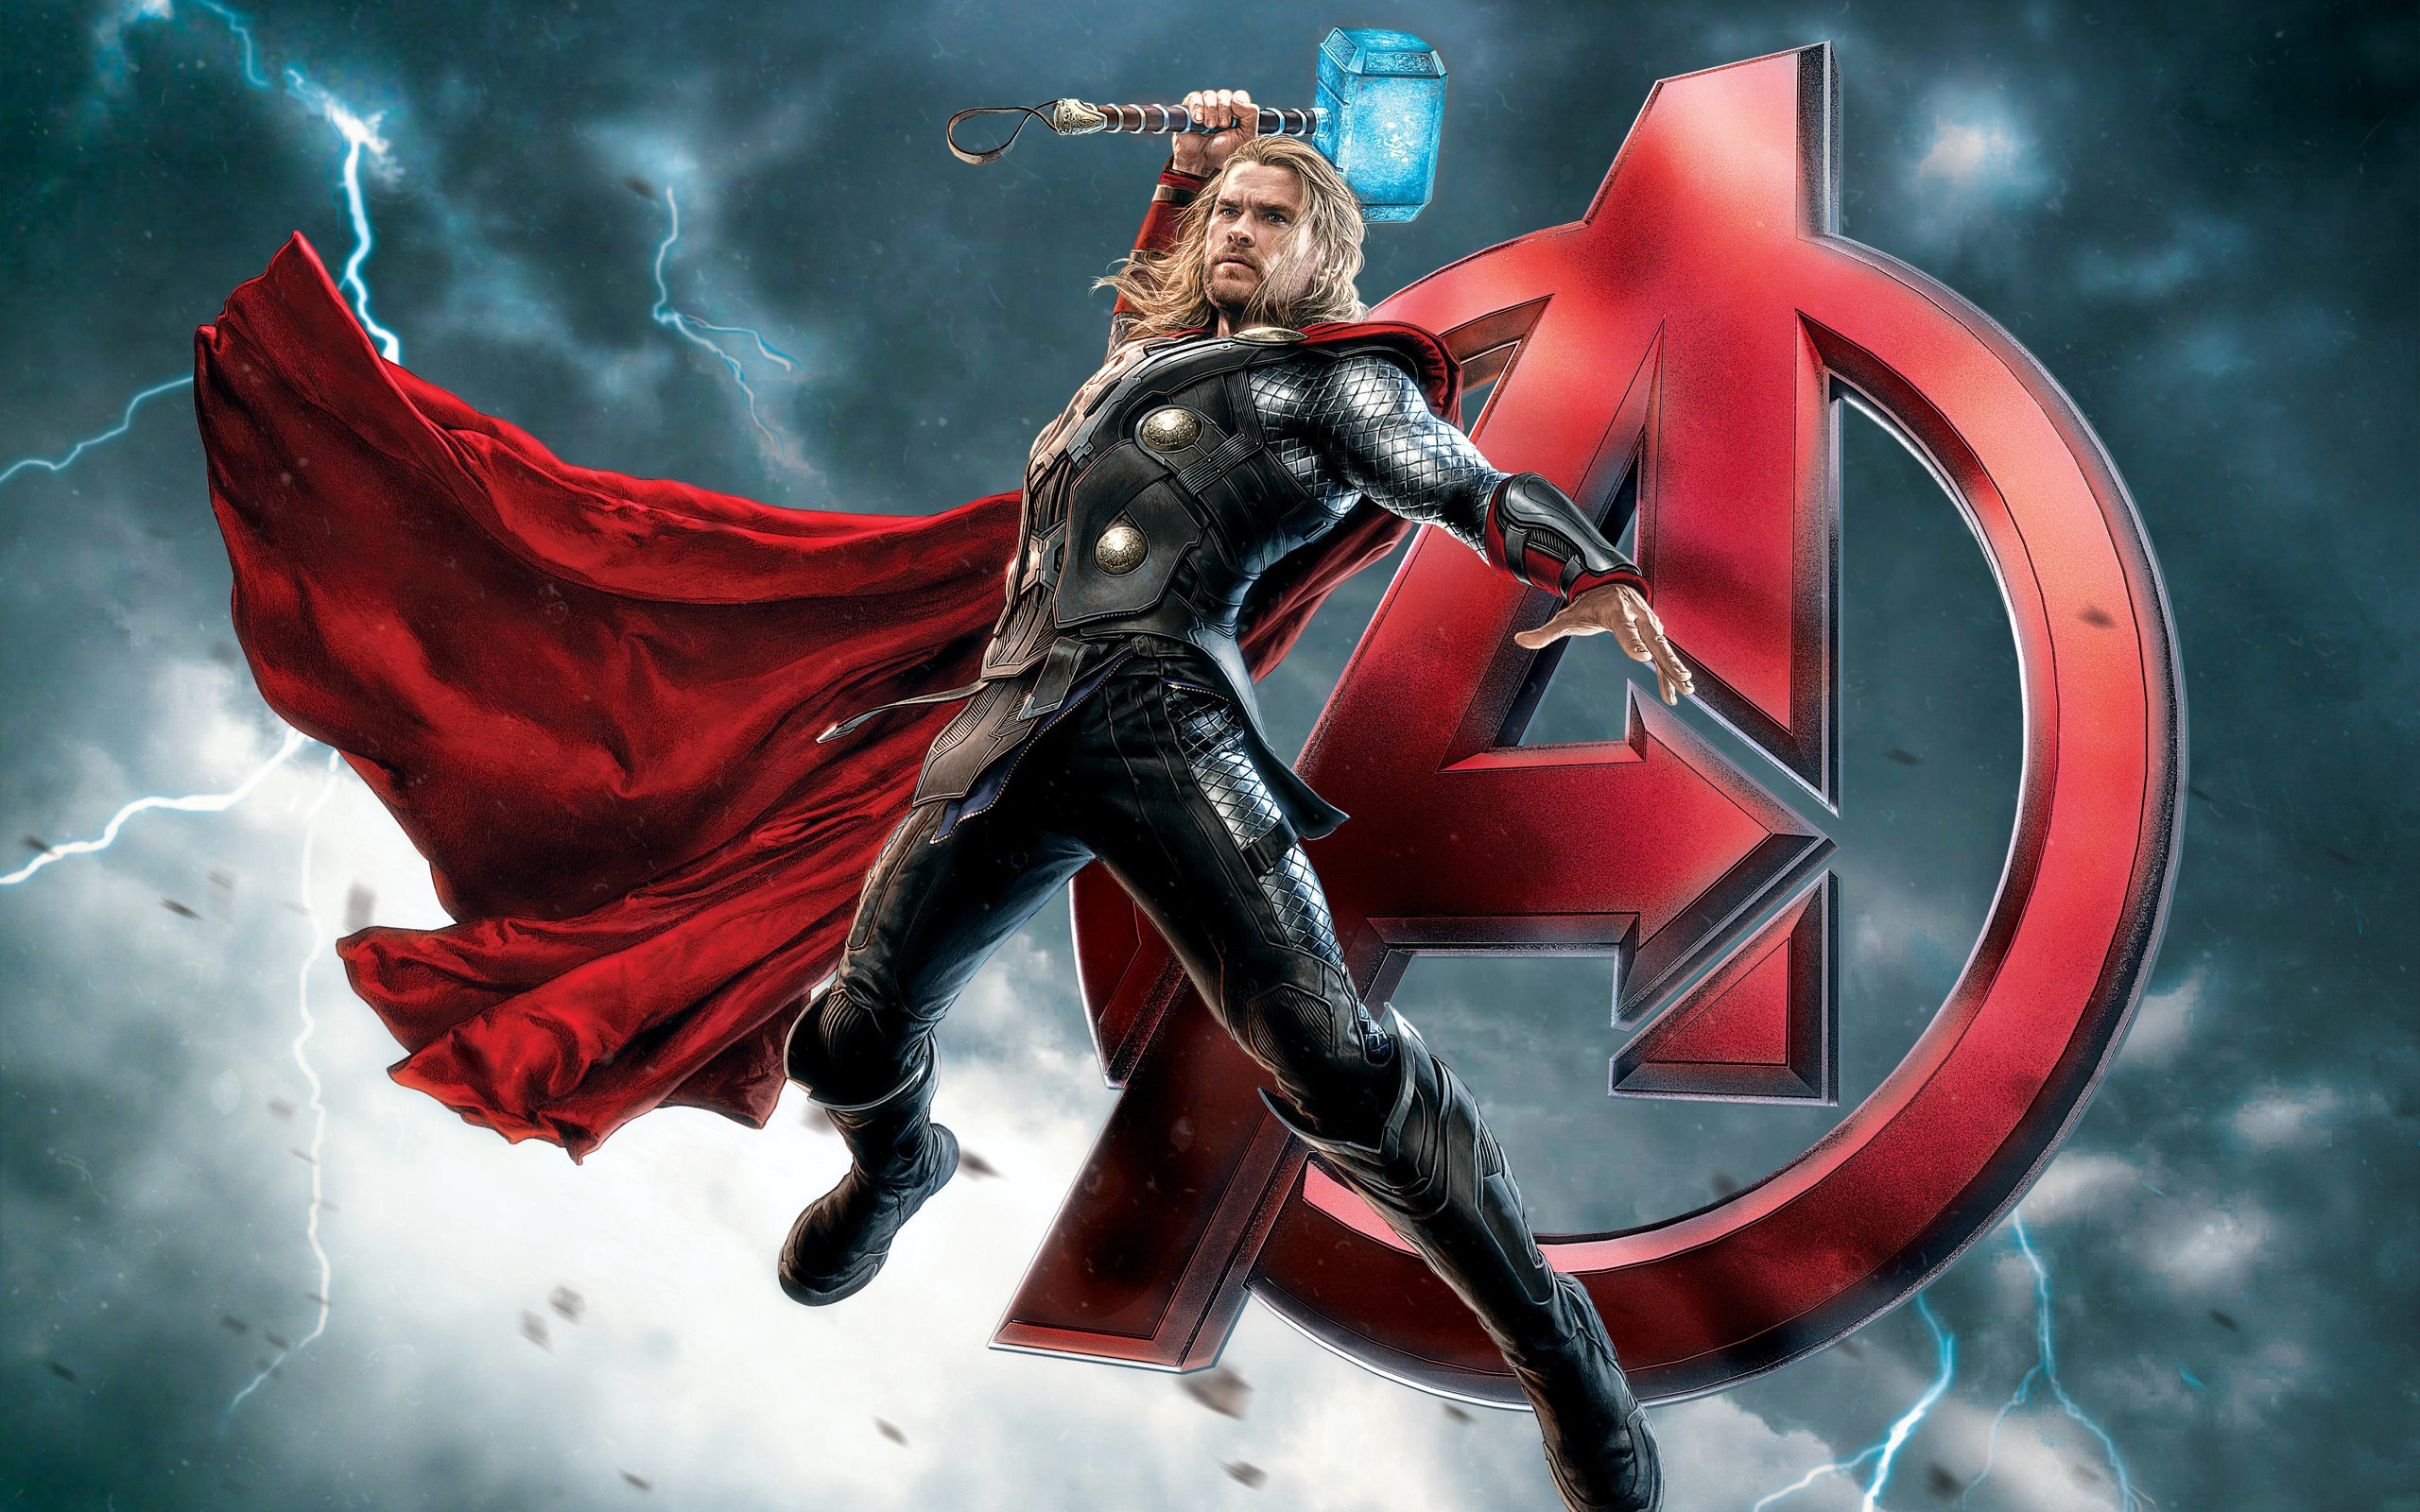 Thor Thor 2 The Dark World Thor Ragnarok Avengers Endgame Avengers Infinity War Avengers Age Of Ultr 2560x1600